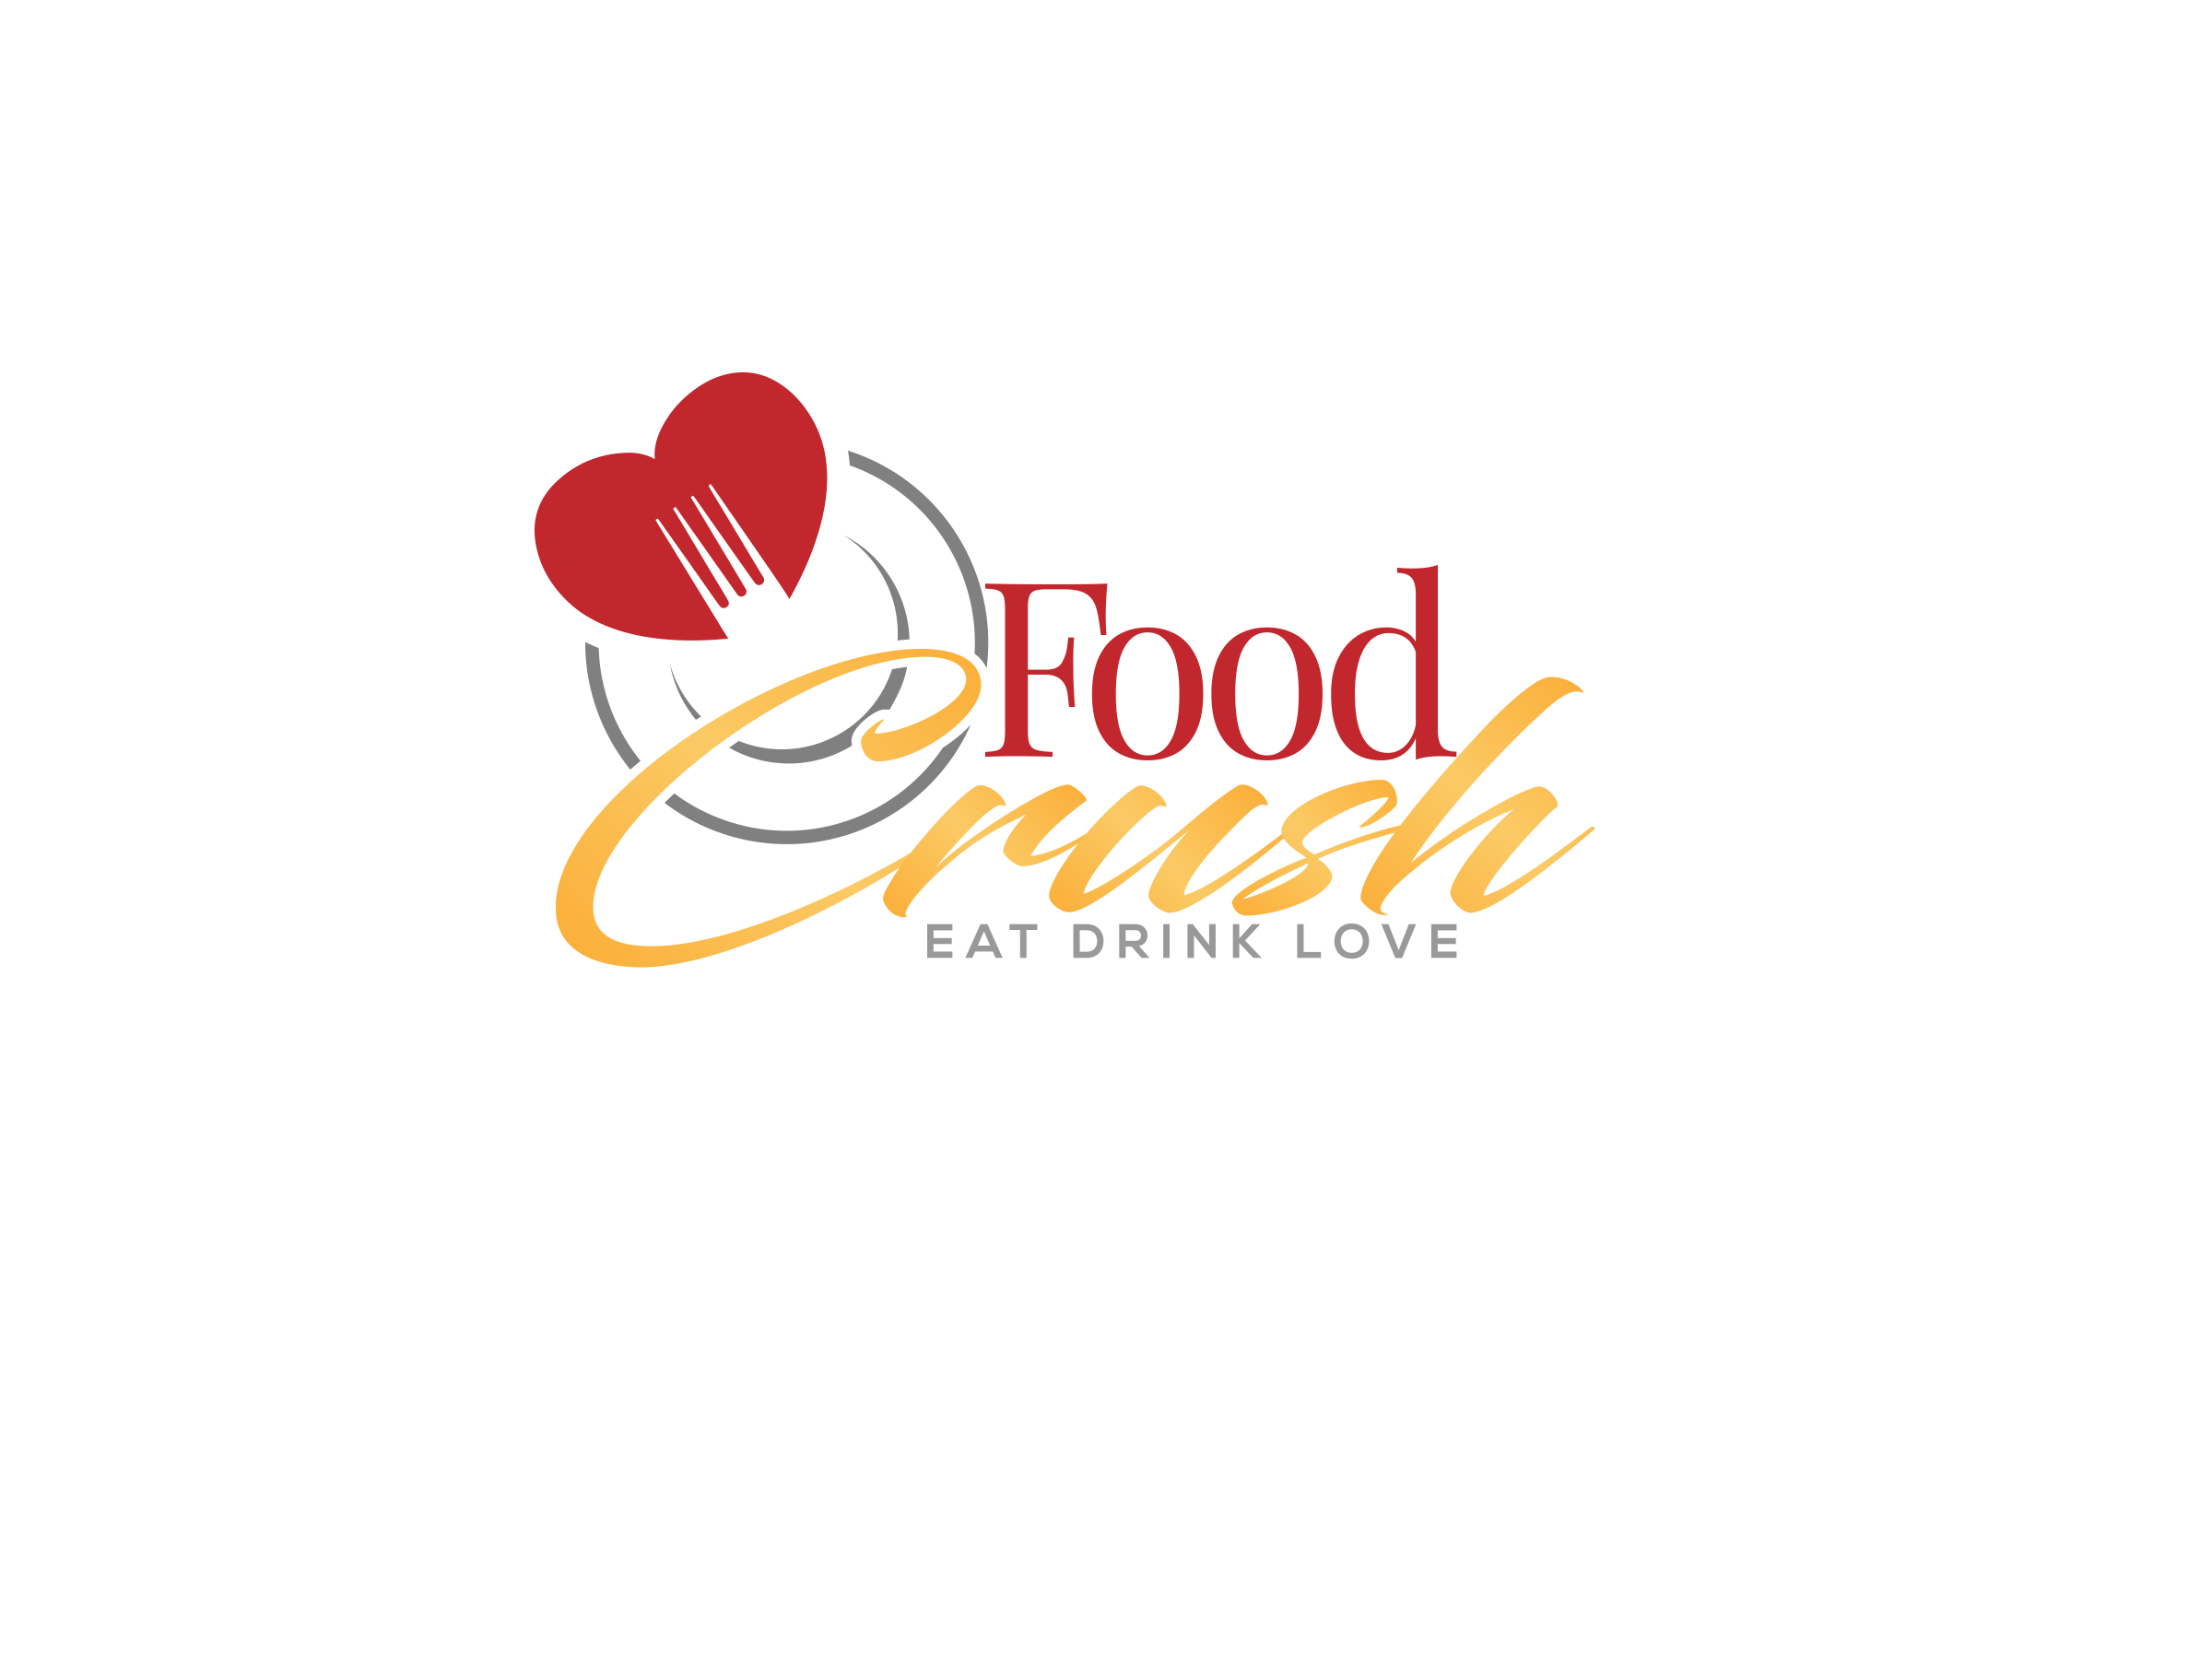 Food Crush